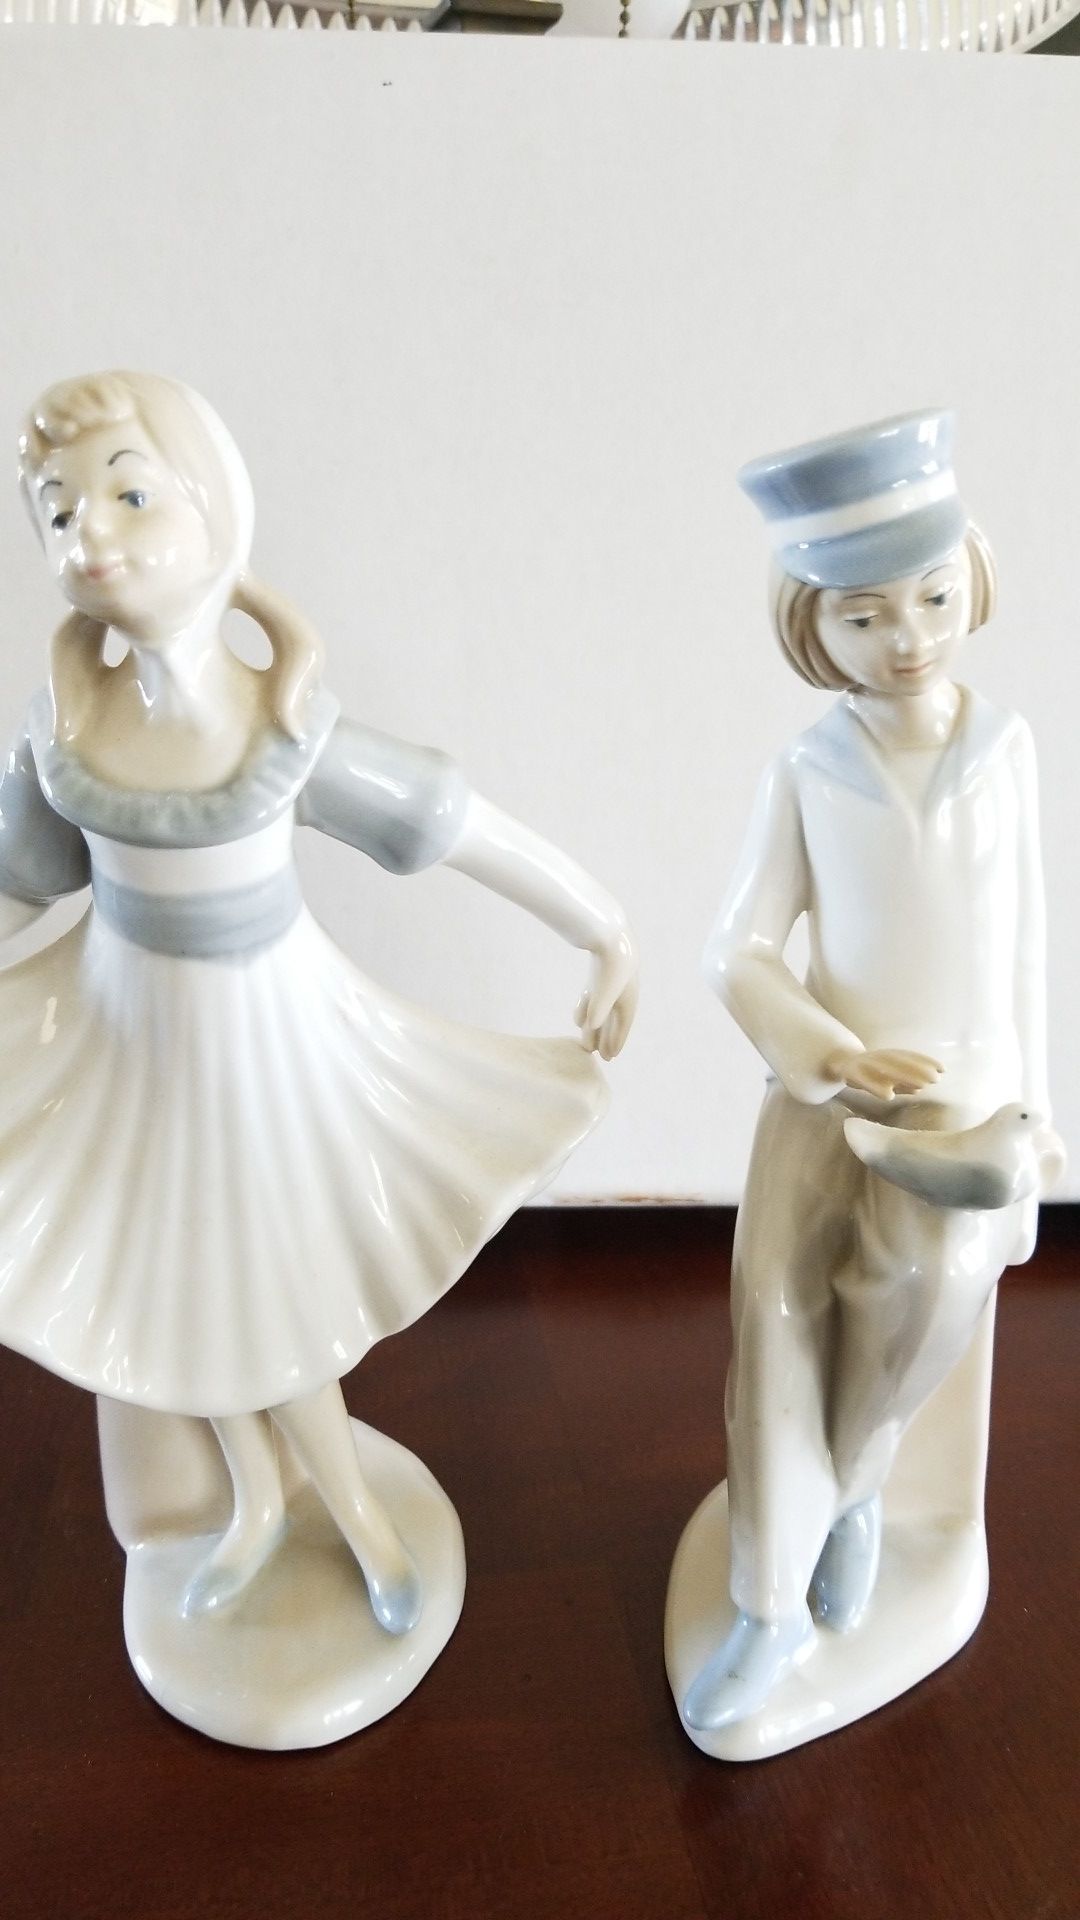 Vintage Castills Porcelain figurines